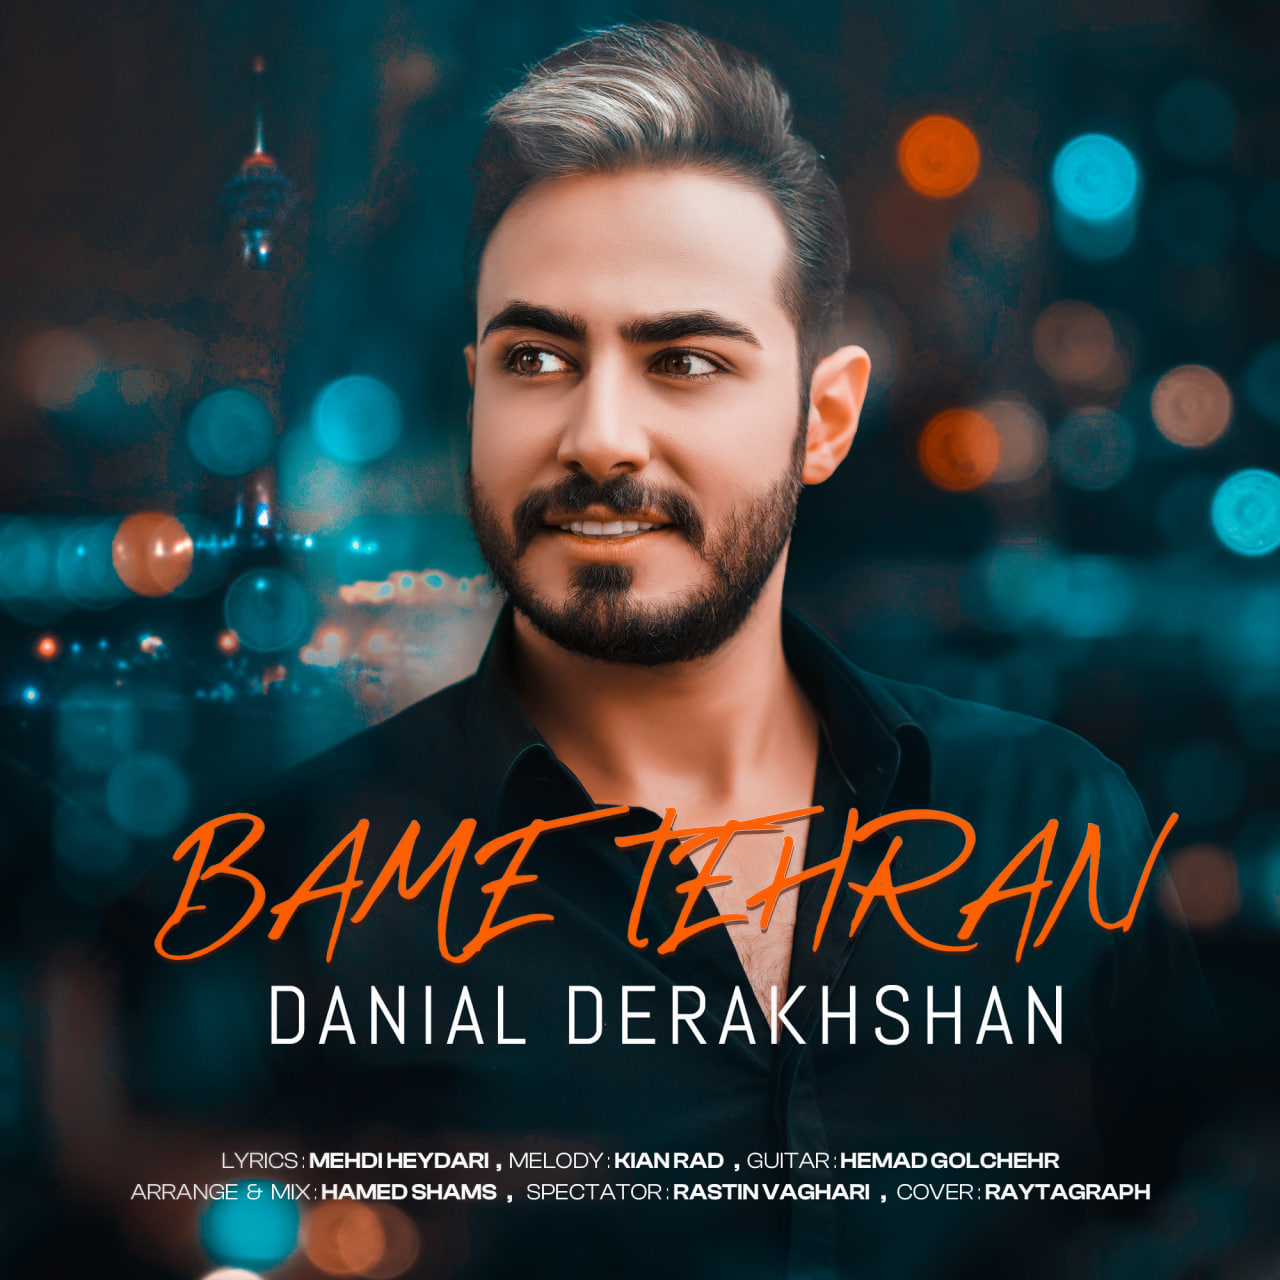 Danial Derakhshan – Bame Tehran